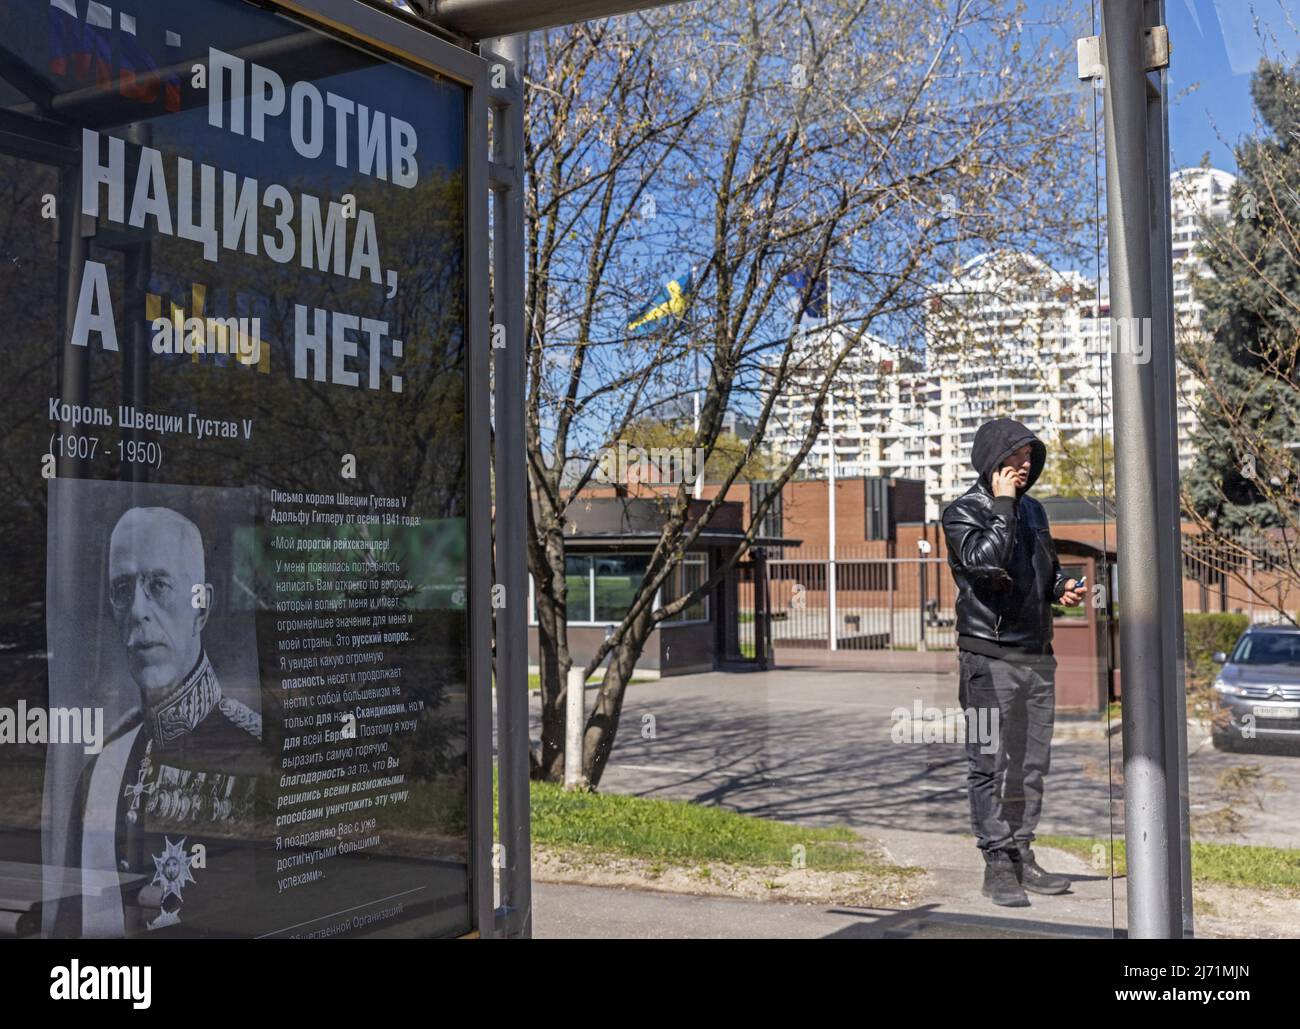 Un cartel con un retrato del rey Gustaf V de Suecia y el mensaje 'Estamos en contra del nazismo, no lo son' está instalado en una parada de autobús cerca de la embajada sueca en Moscú, Rusia 5 de mayo de 2022. FOTÓGRAFO REUTERS/REUTERS Foto de stock